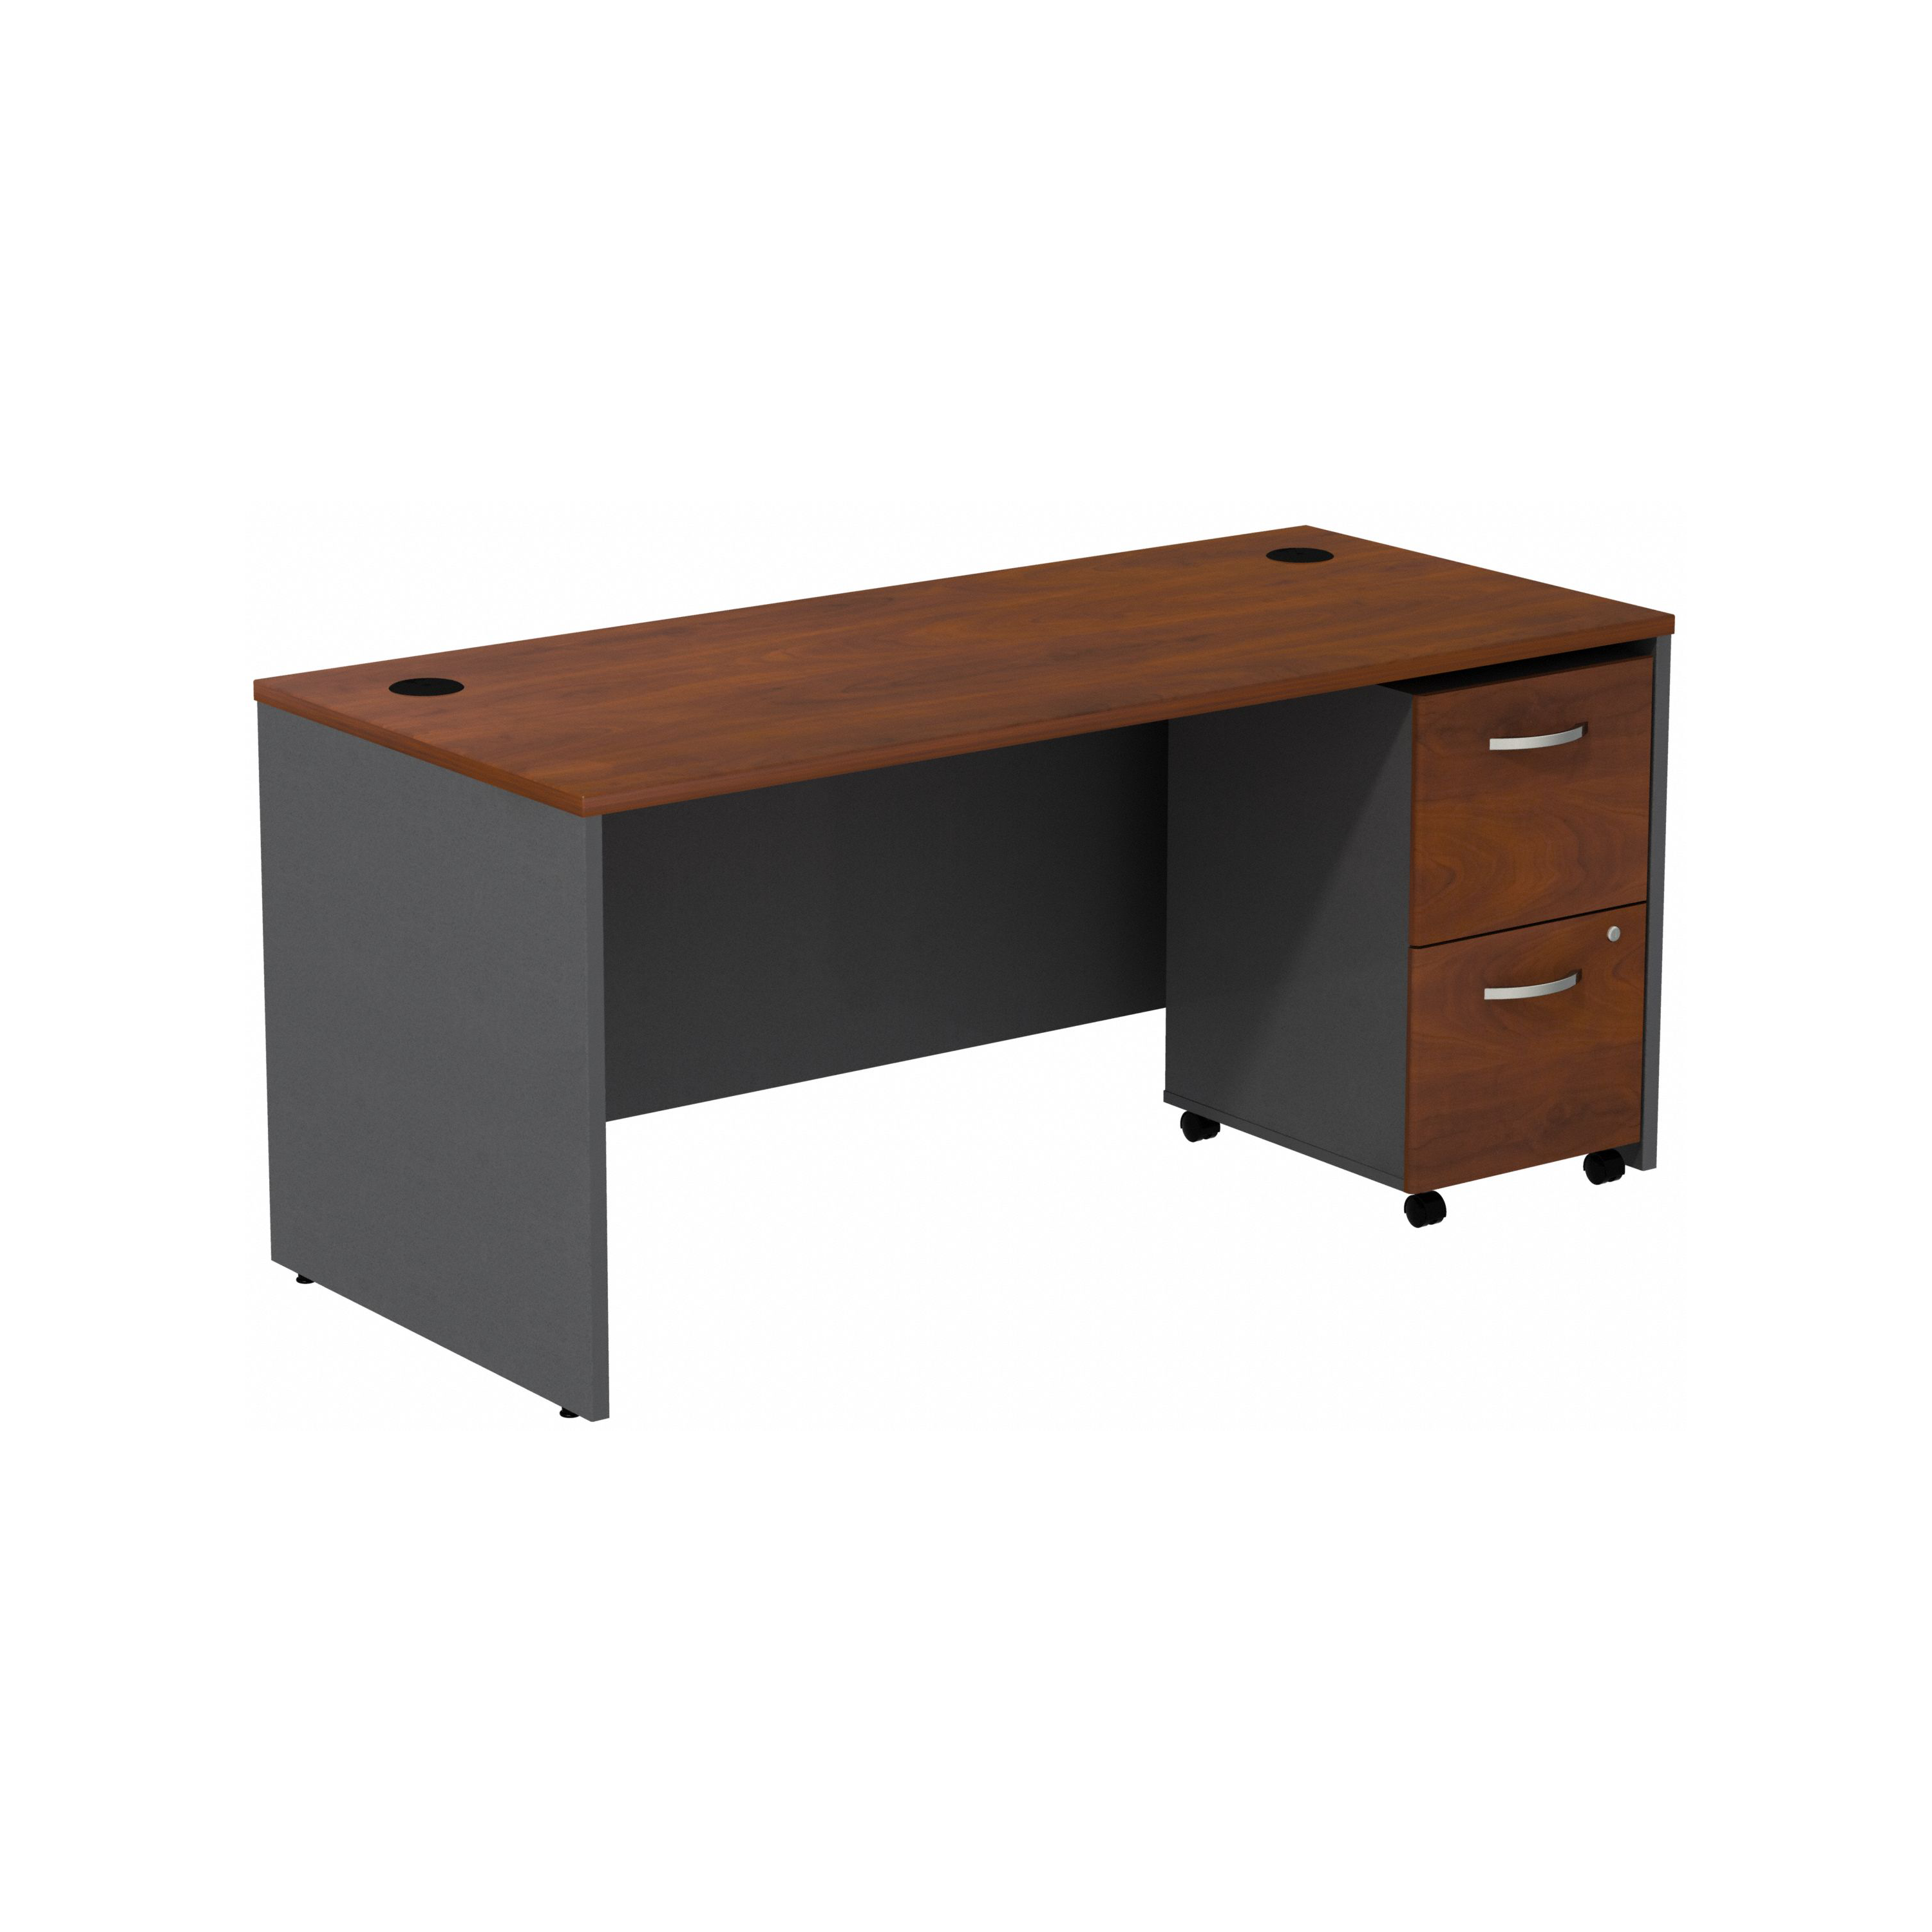 Shop Bush Business Furniture Series C Desk with 2 Drawer Mobile Pedestal 02 SRC028HCSU #color_hansen cherry